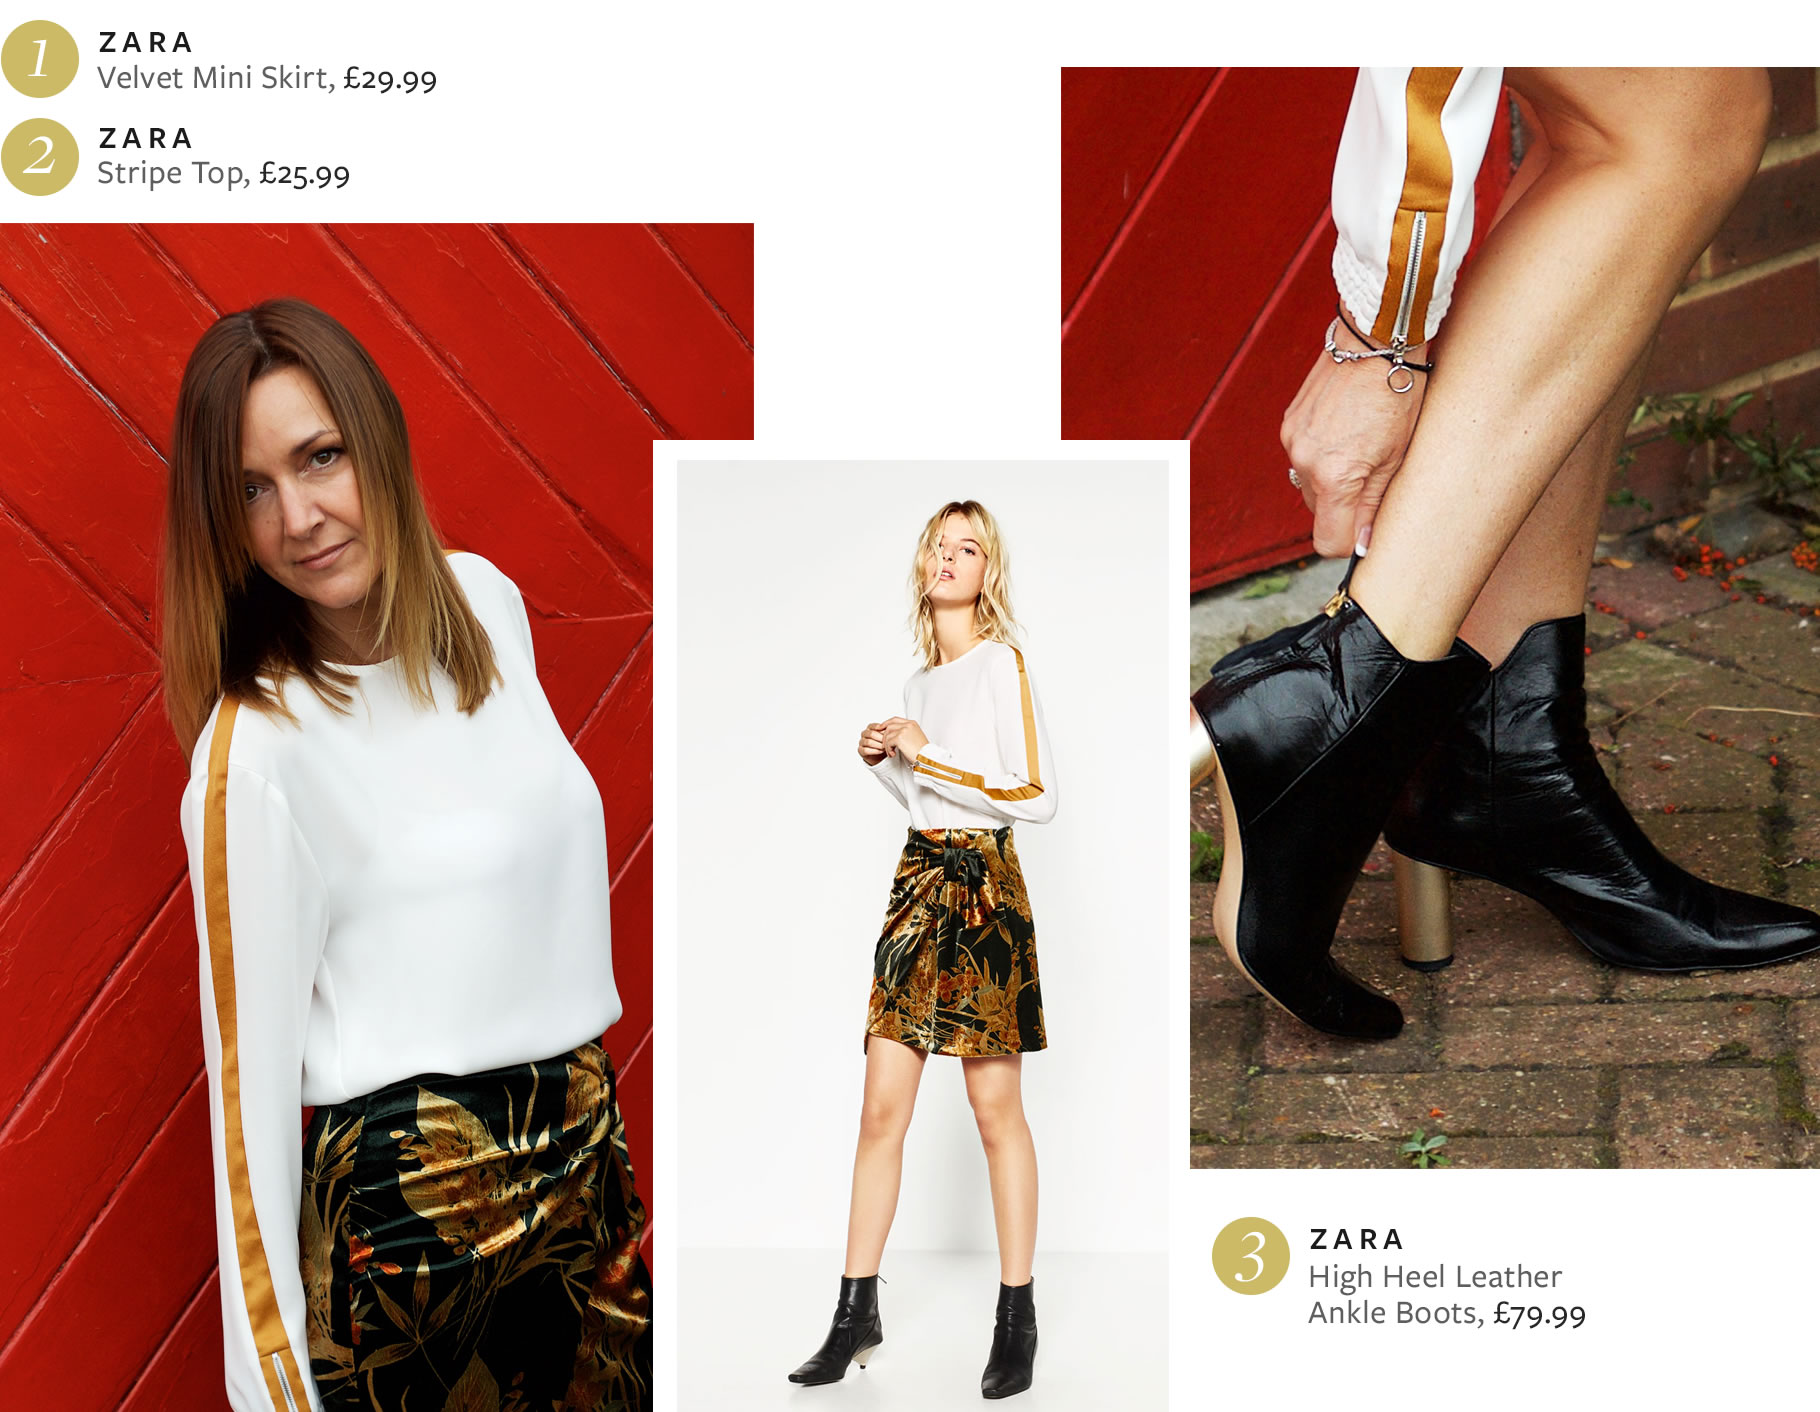 Zara Velvet Mini Skirt and Stripe Top